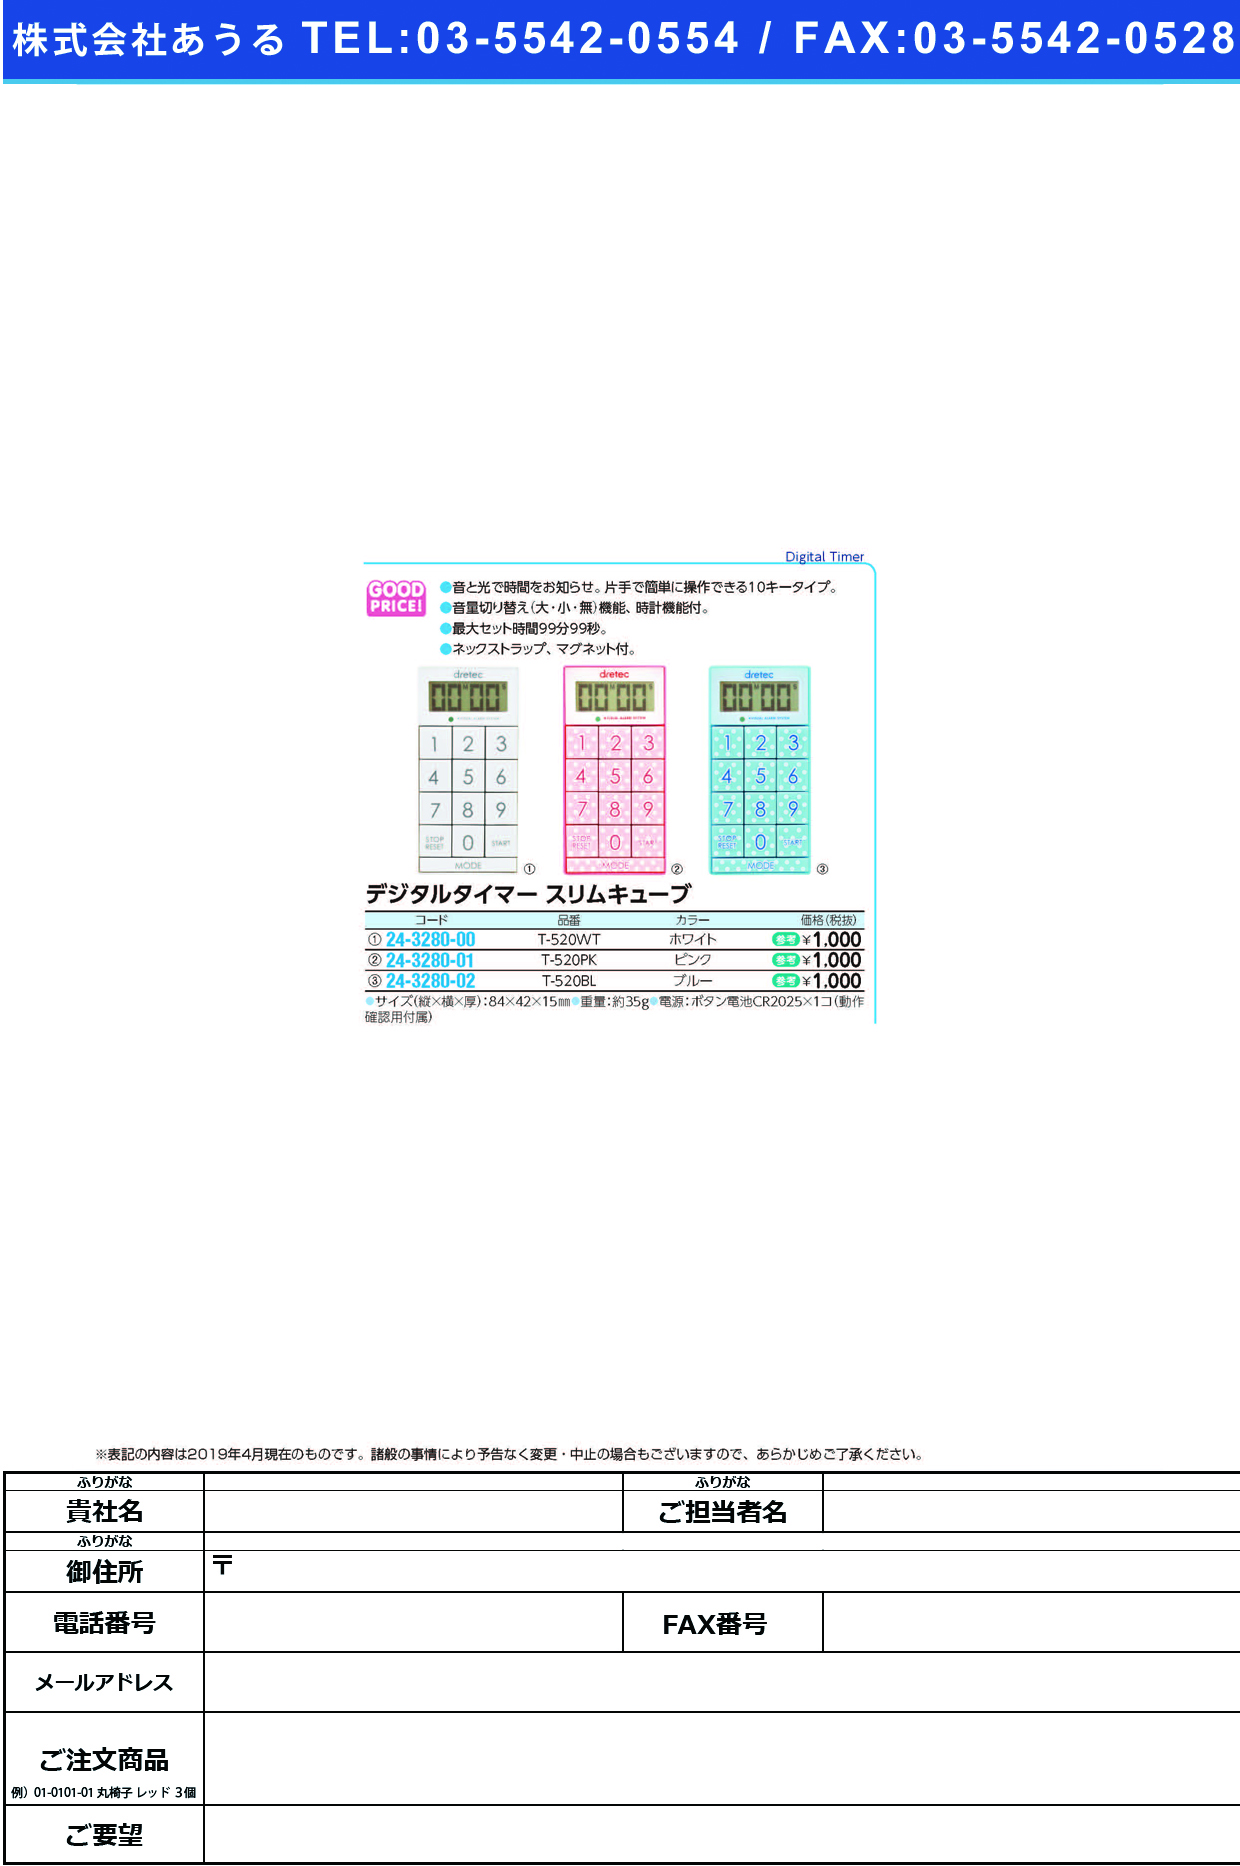 (24-3280-02)デジタルタイマースリムキューブ T-520BL(ﾌﾞﾙｰ) ﾃﾞｼﾞﾀﾙﾀｲﾏｰｽﾘﾑｷｭｰﾌﾞ(ドリテック)【1台単位】【2019年カタログ商品】